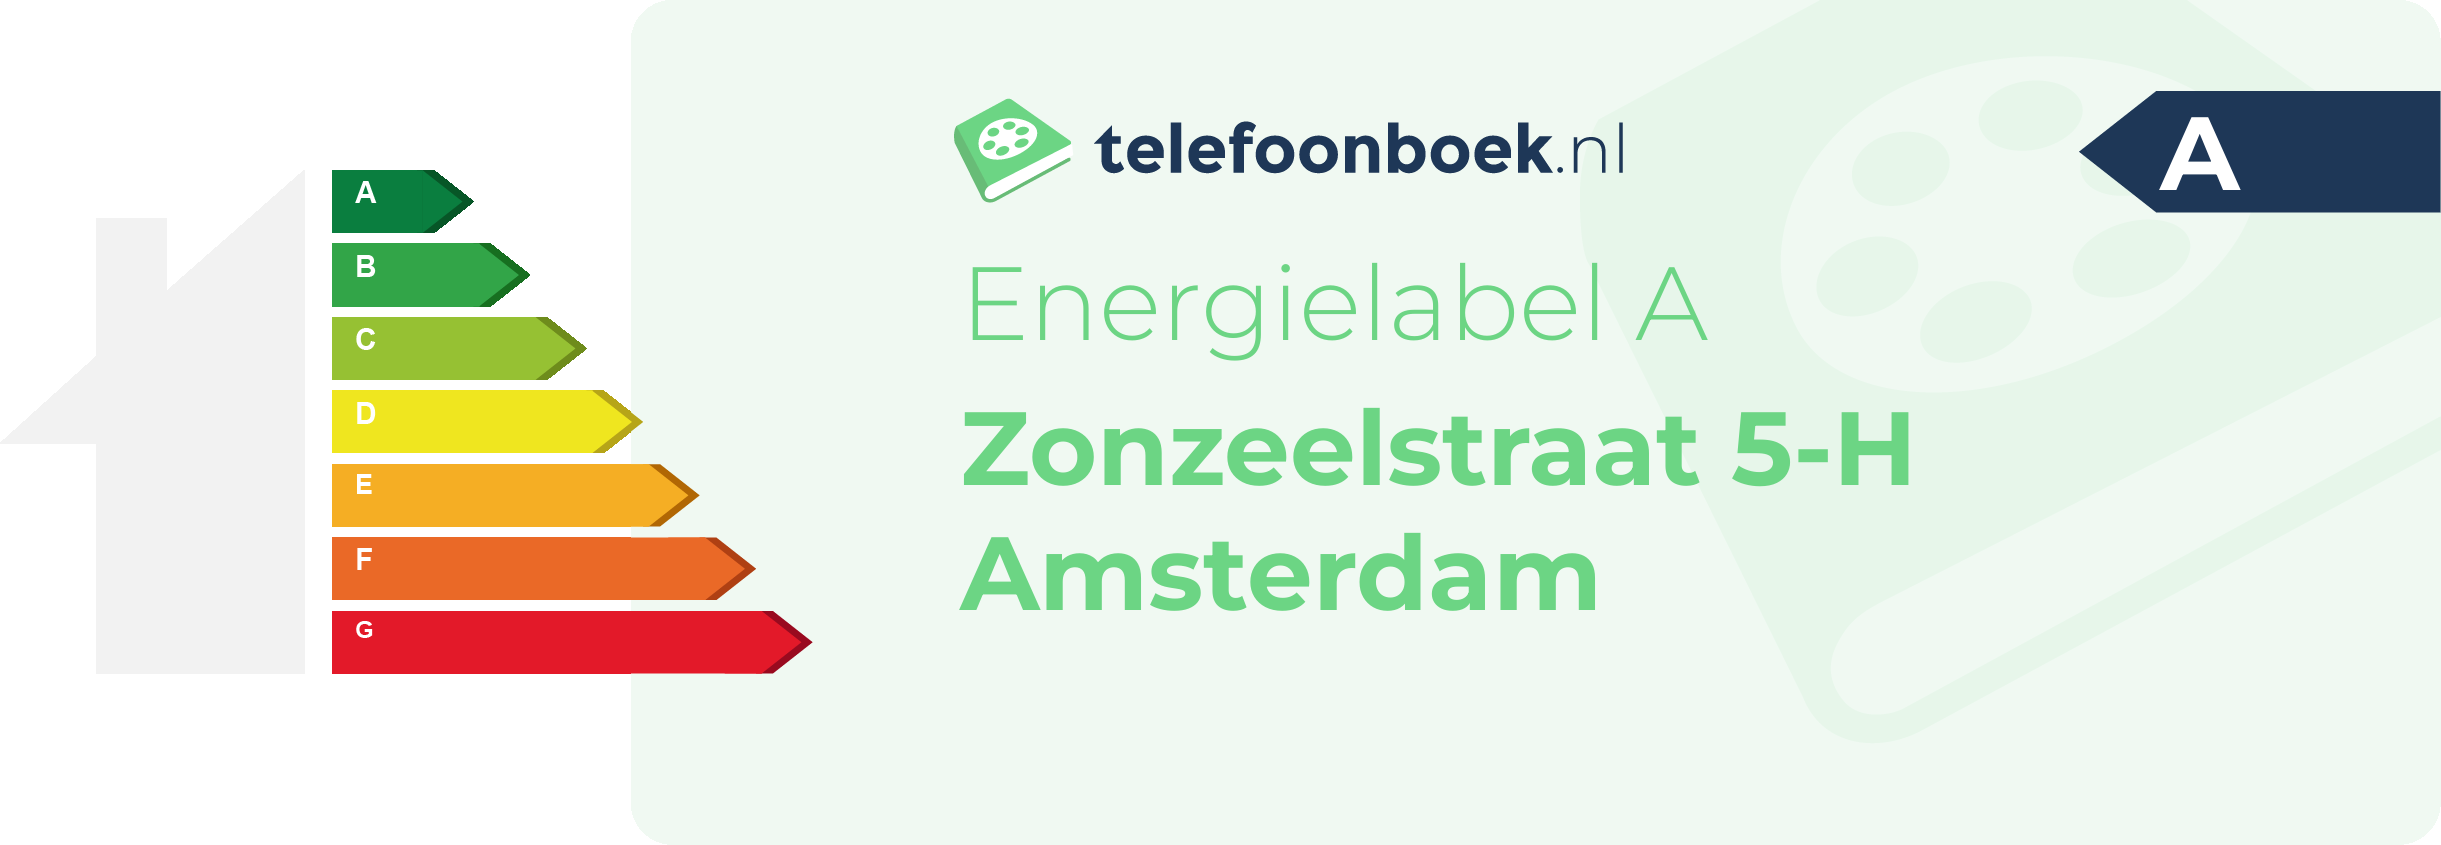 Energielabel Zonzeelstraat 5-H Amsterdam